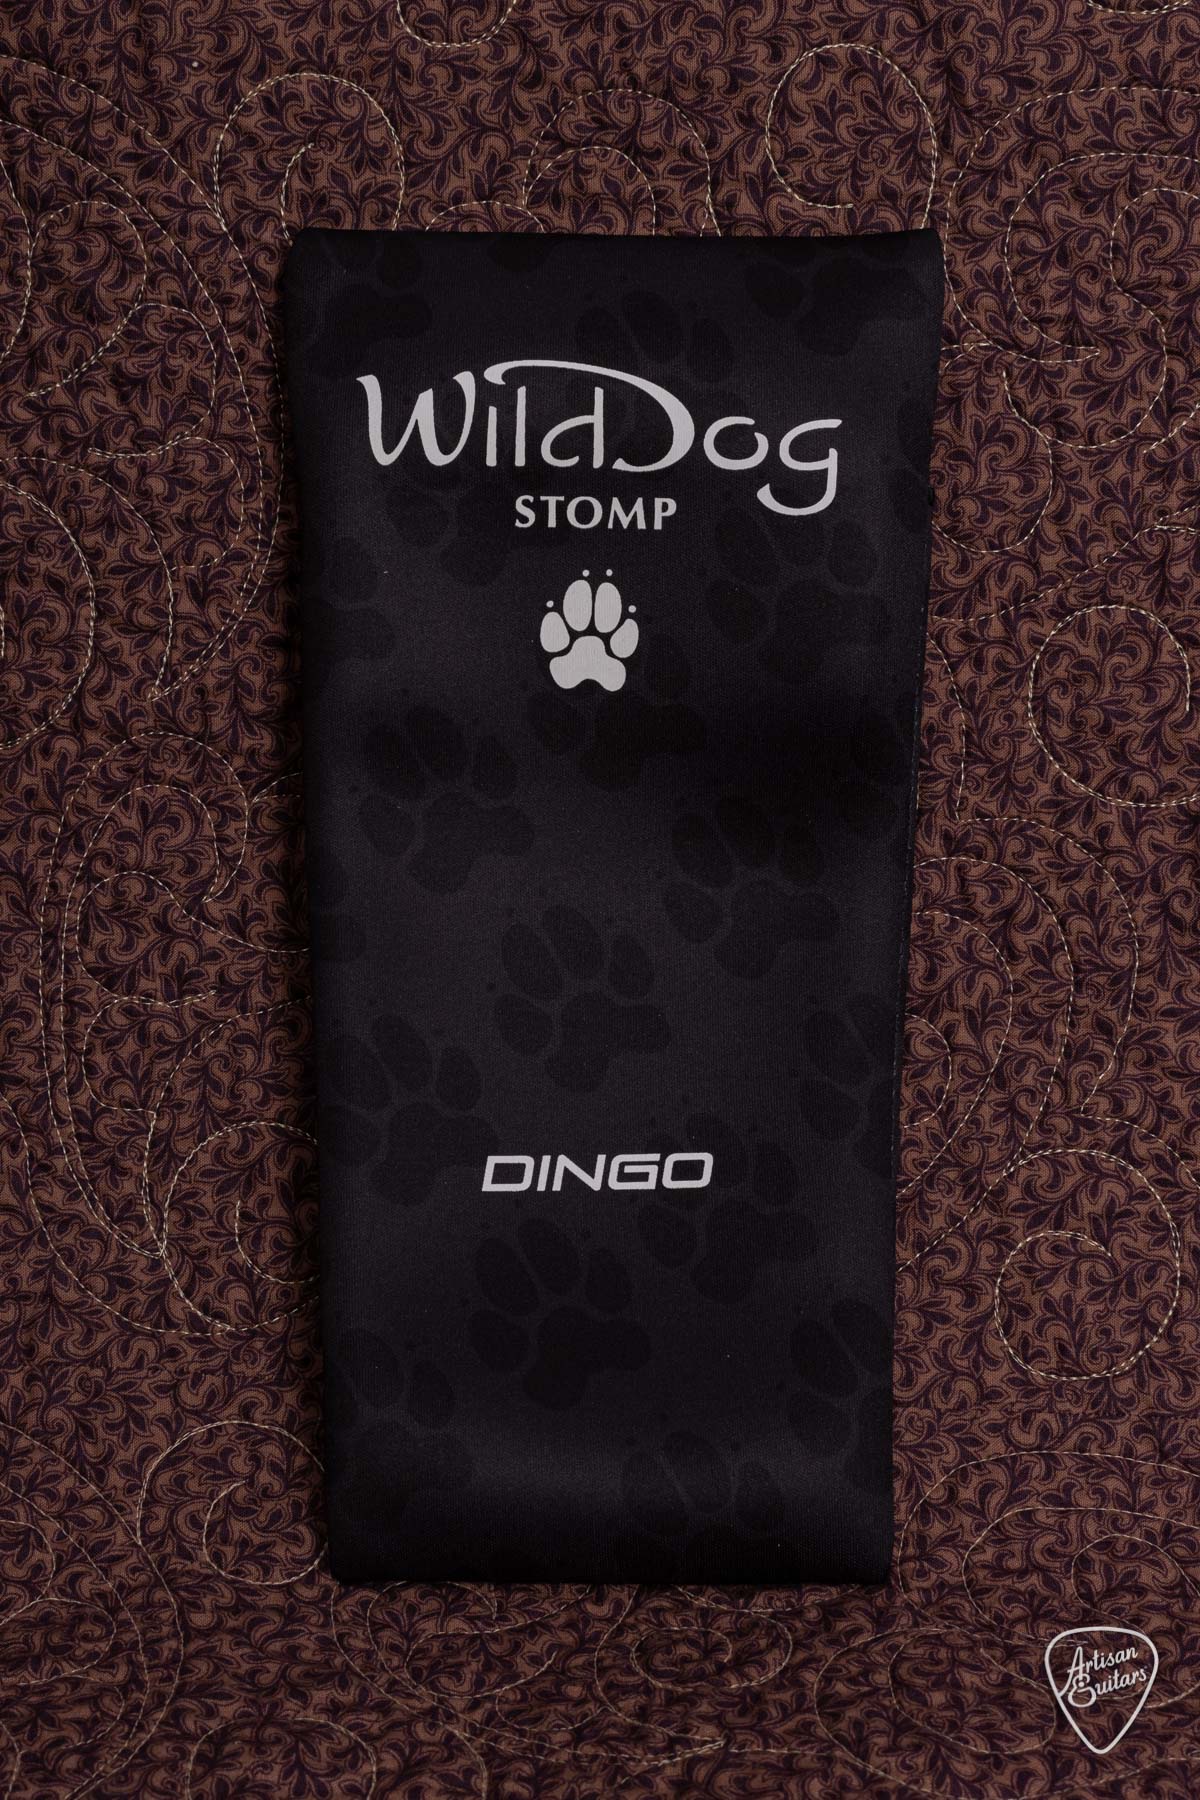 Wild Dog Dingo Stomp Box - WD-531022